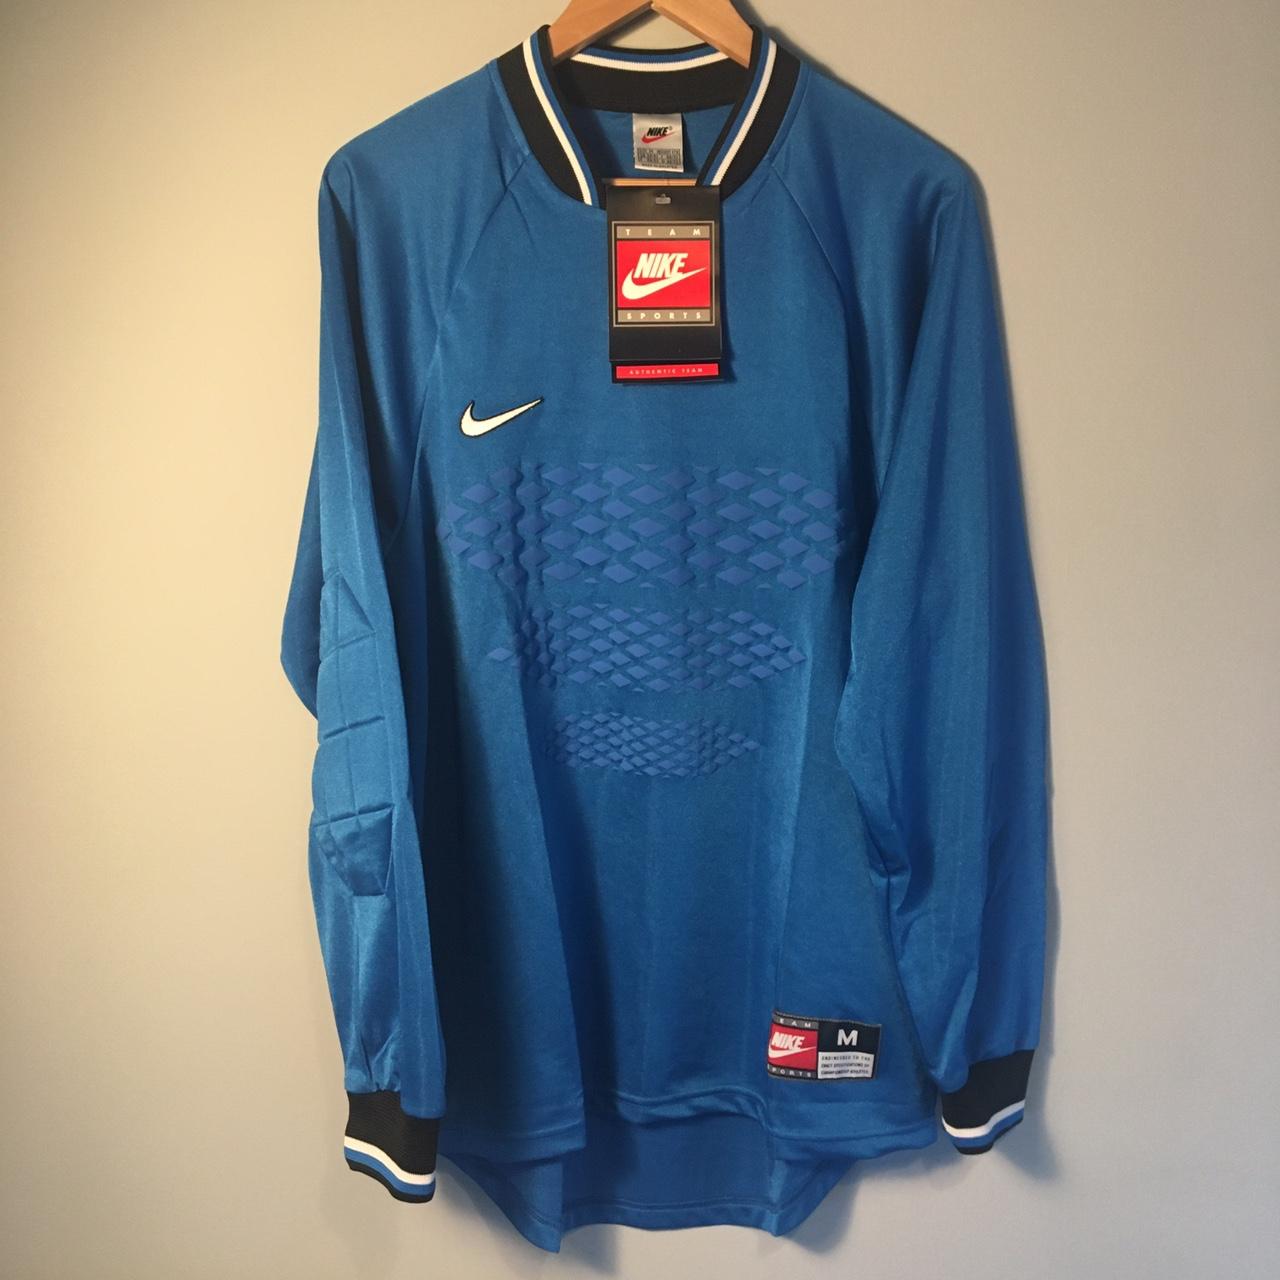 Nike 1990’s Template Goalkeeper Football Shirt Size... - Depop